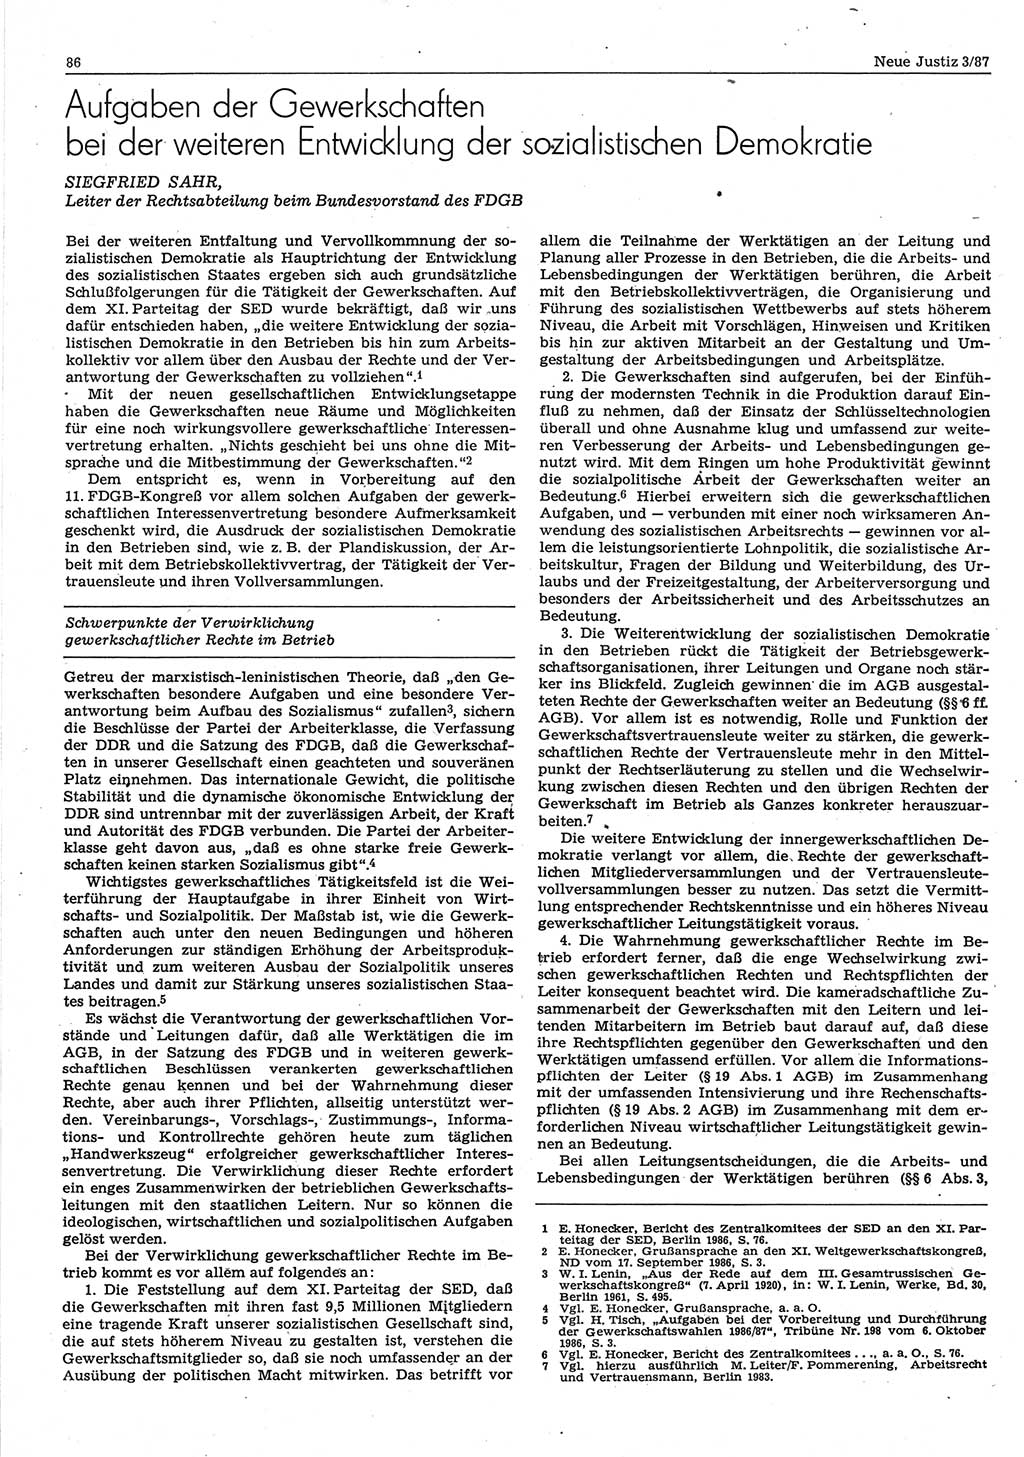 Neue Justiz (NJ), Zeitschrift für sozialistisches Recht und Gesetzlichkeit [Deutsche Demokratische Republik (DDR)], 41. Jahrgang 1987, Seite 86 (NJ DDR 1987, S. 86)